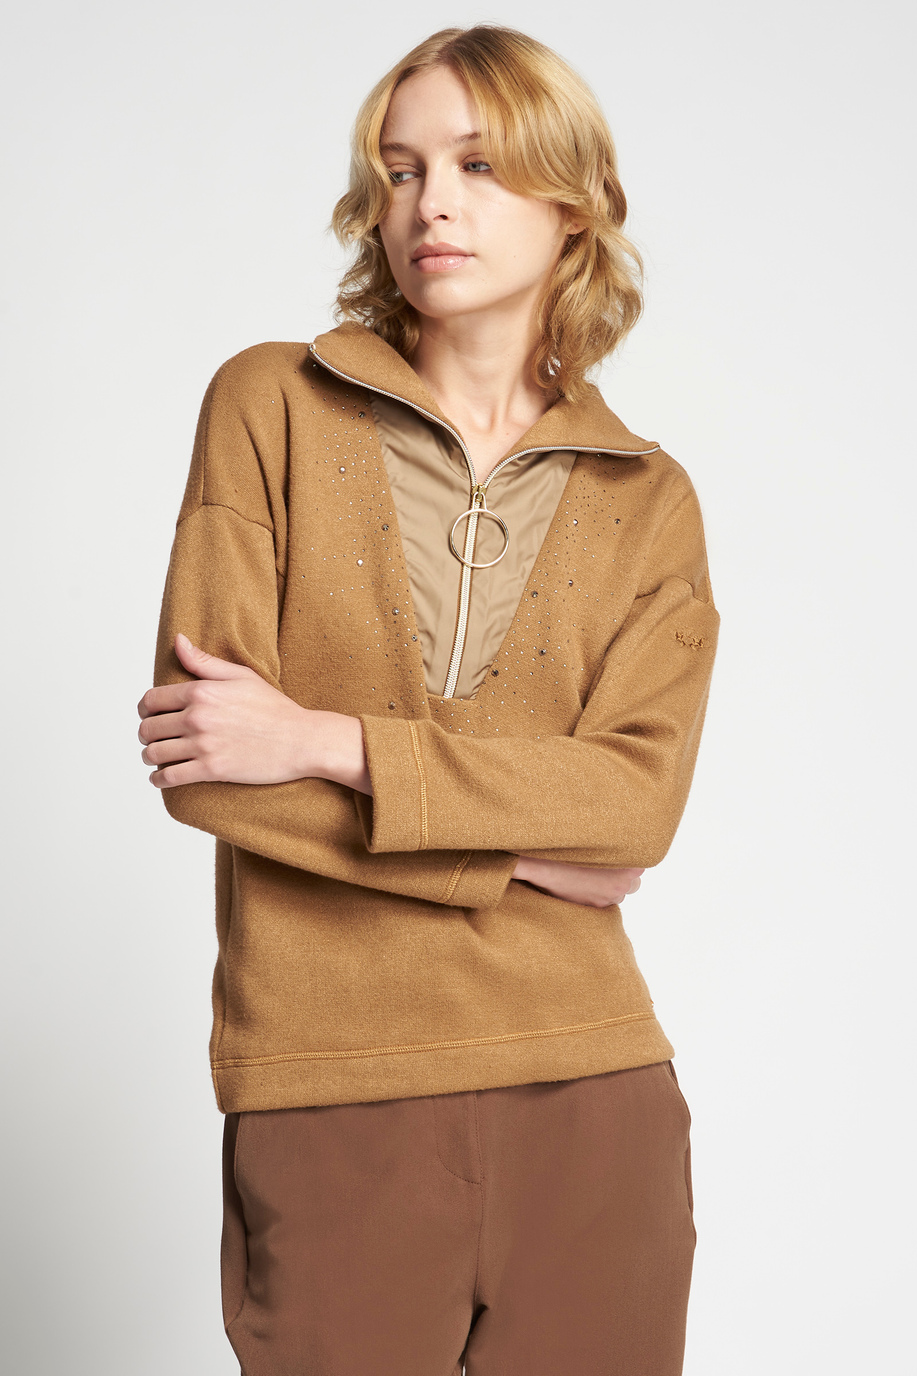 Synthetic fibre high-neck sweatshirt | La Martina - Official Online Shop